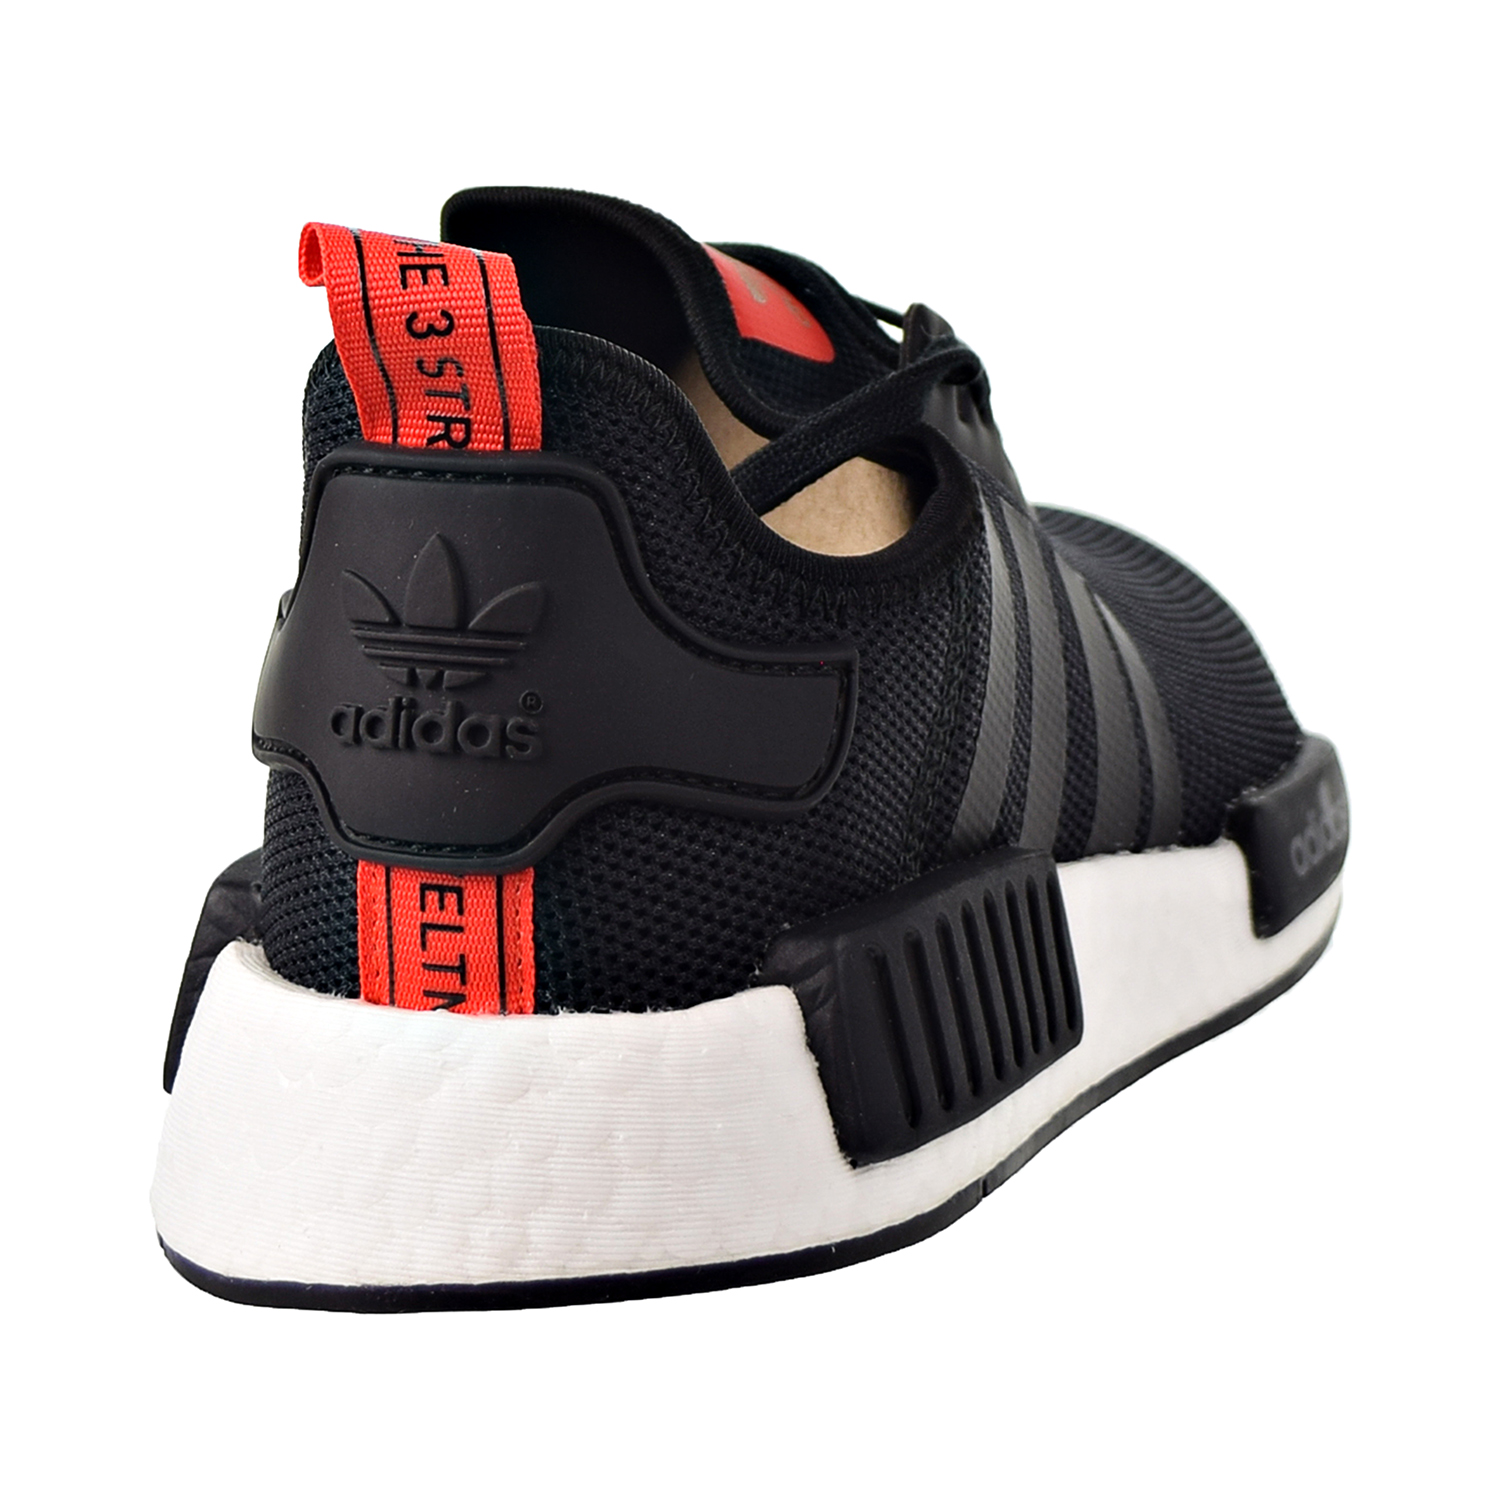 Adidas NMD_R1 Big Kids Shoes Black-White-Red B42087 | eBay